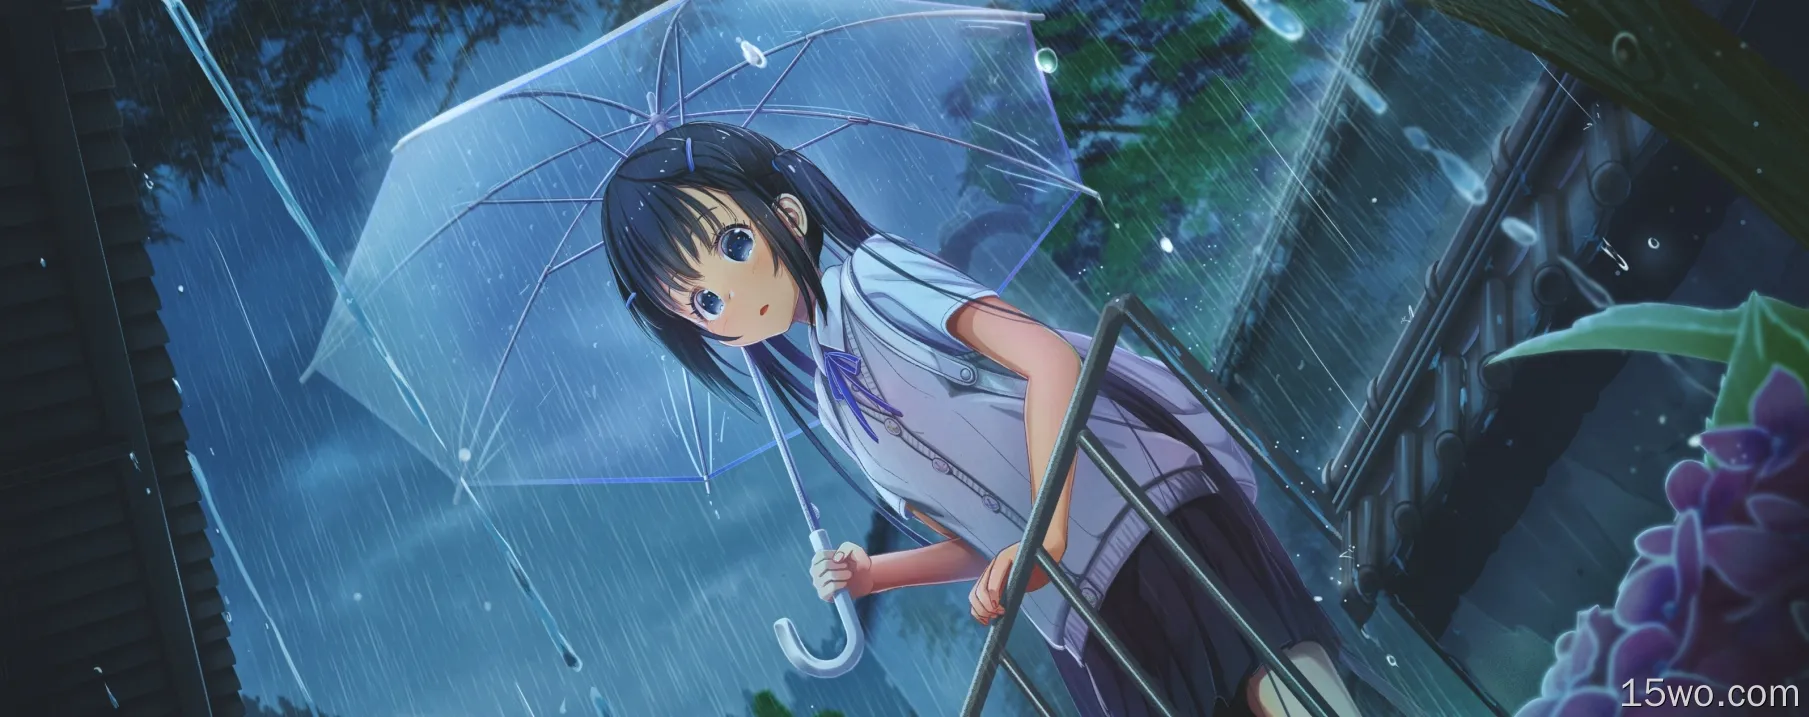 动漫女孩，下雨，透明伞，萝莉，蓝眼睛，短发，校服